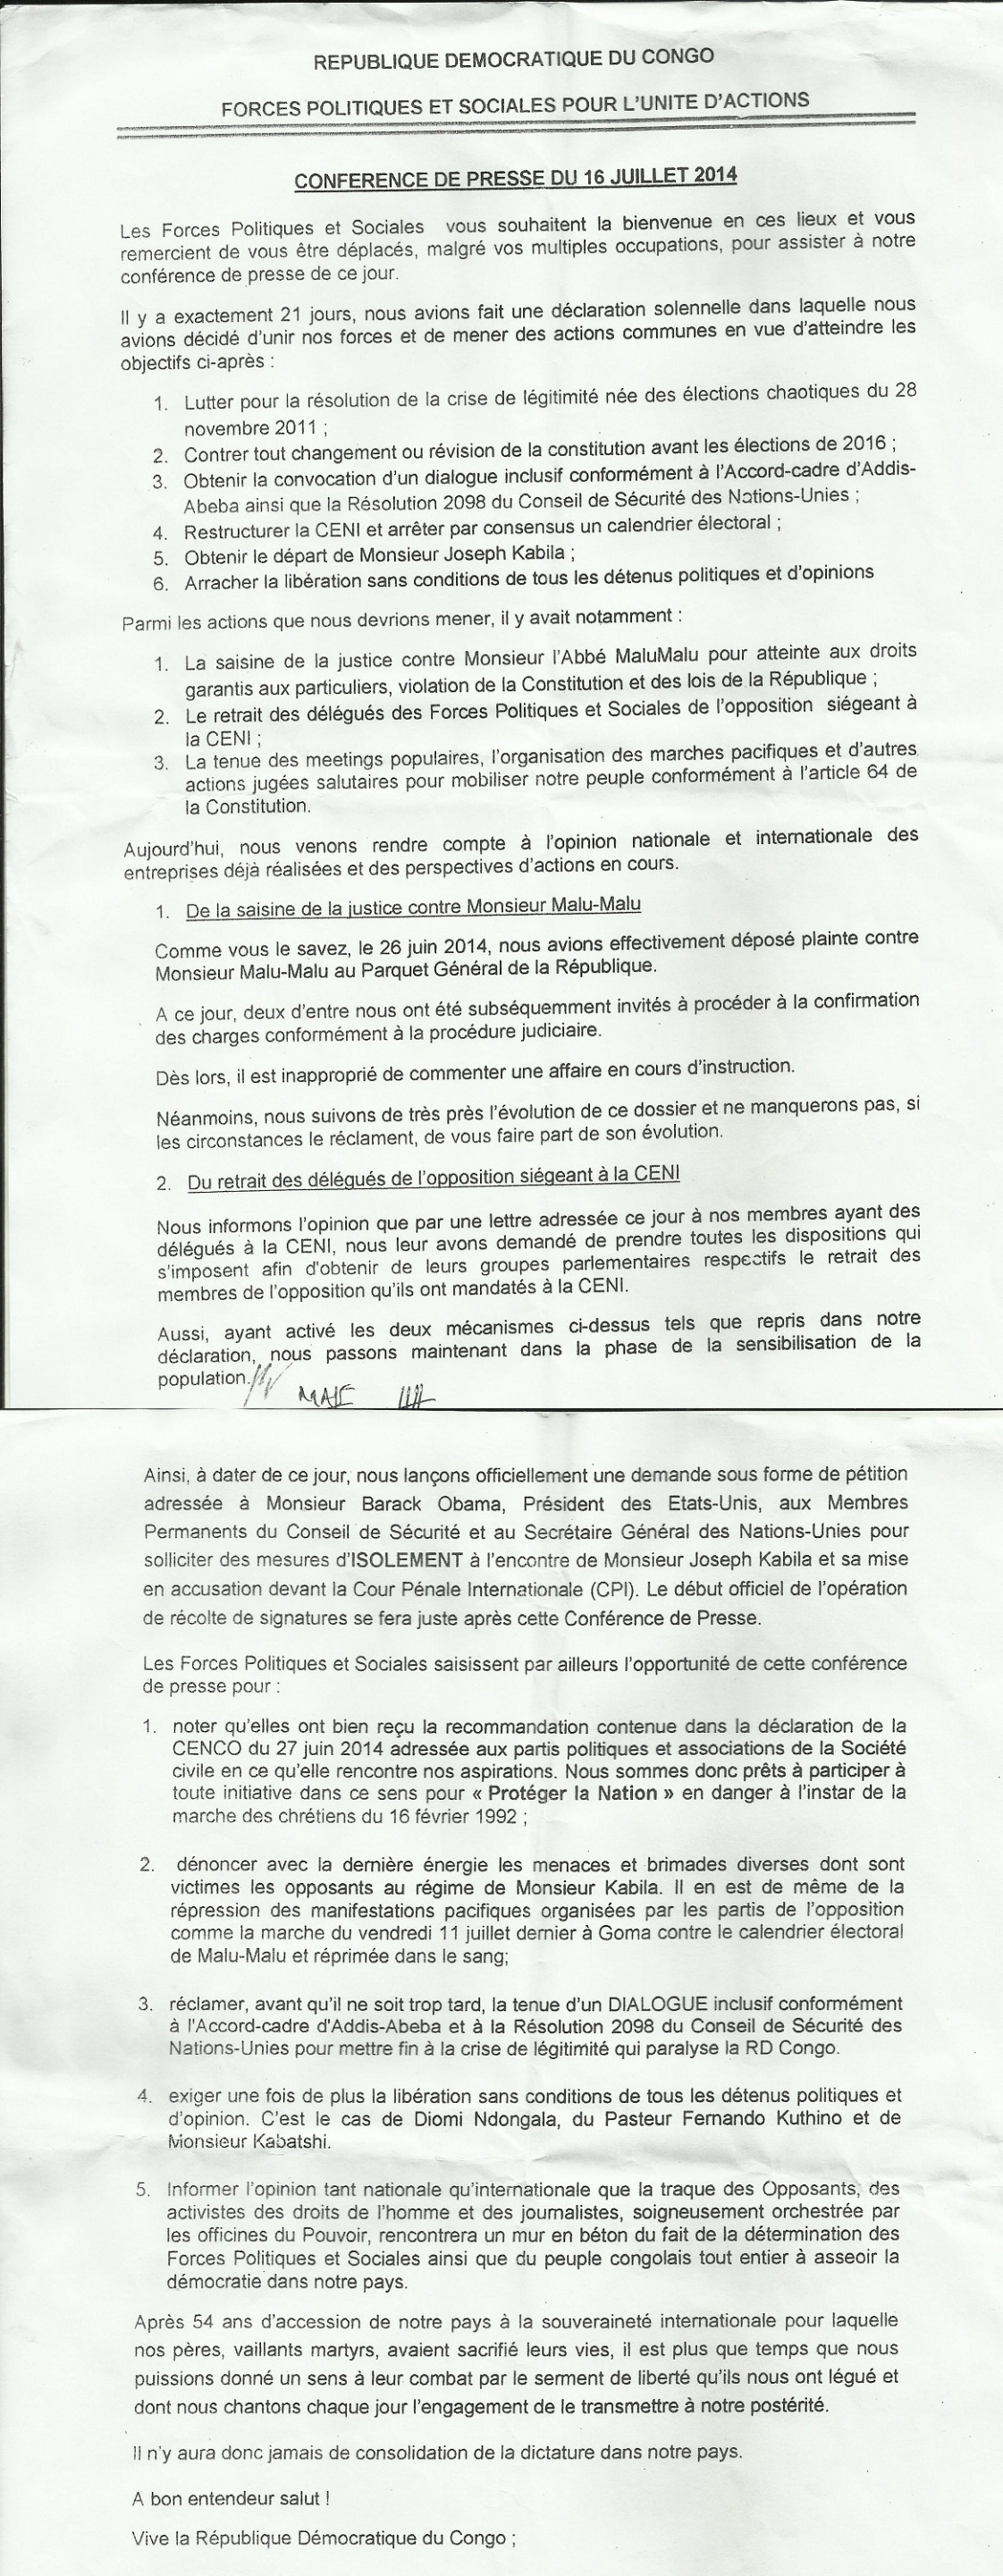 EUGENE DIOMI NDONGALA, LE PRISONNIER POLITIQUE DU REGIME KABILA - Page 23 Conference-de-presse16072014